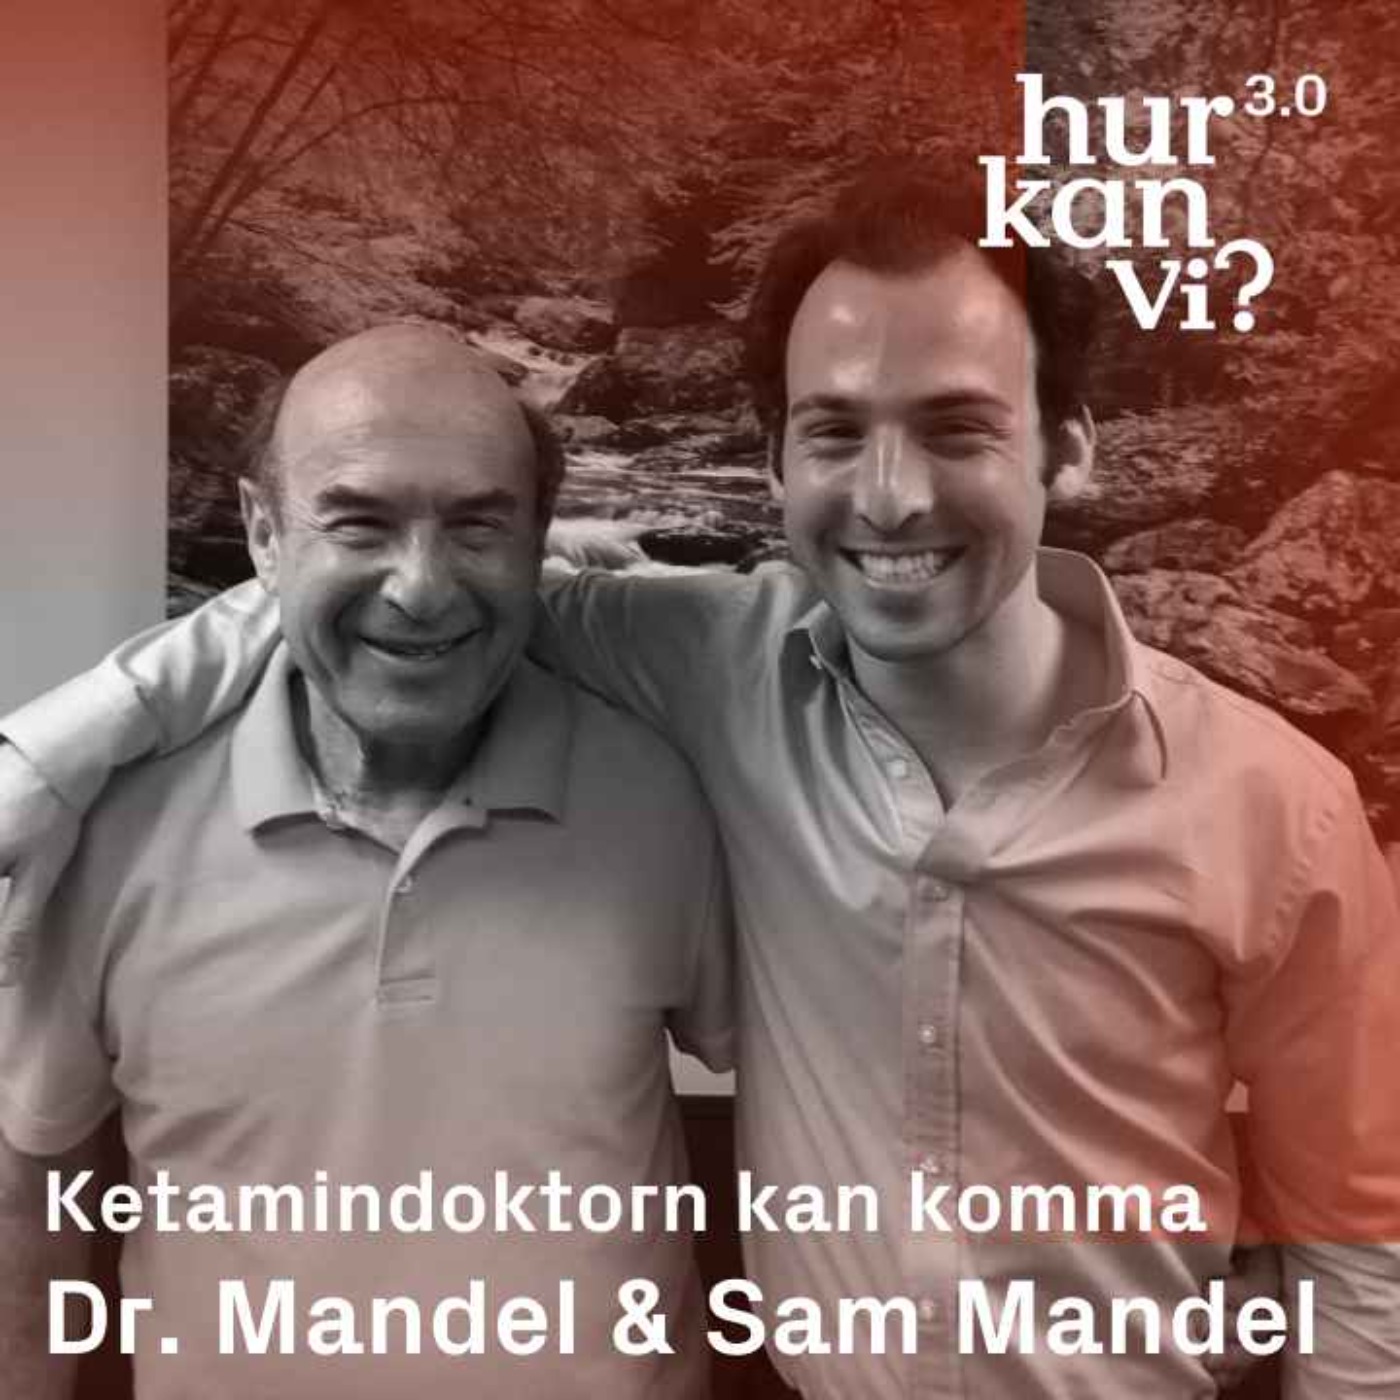 Dr. Mandel & Sam Mandel - Ketamindoktorn kan komma